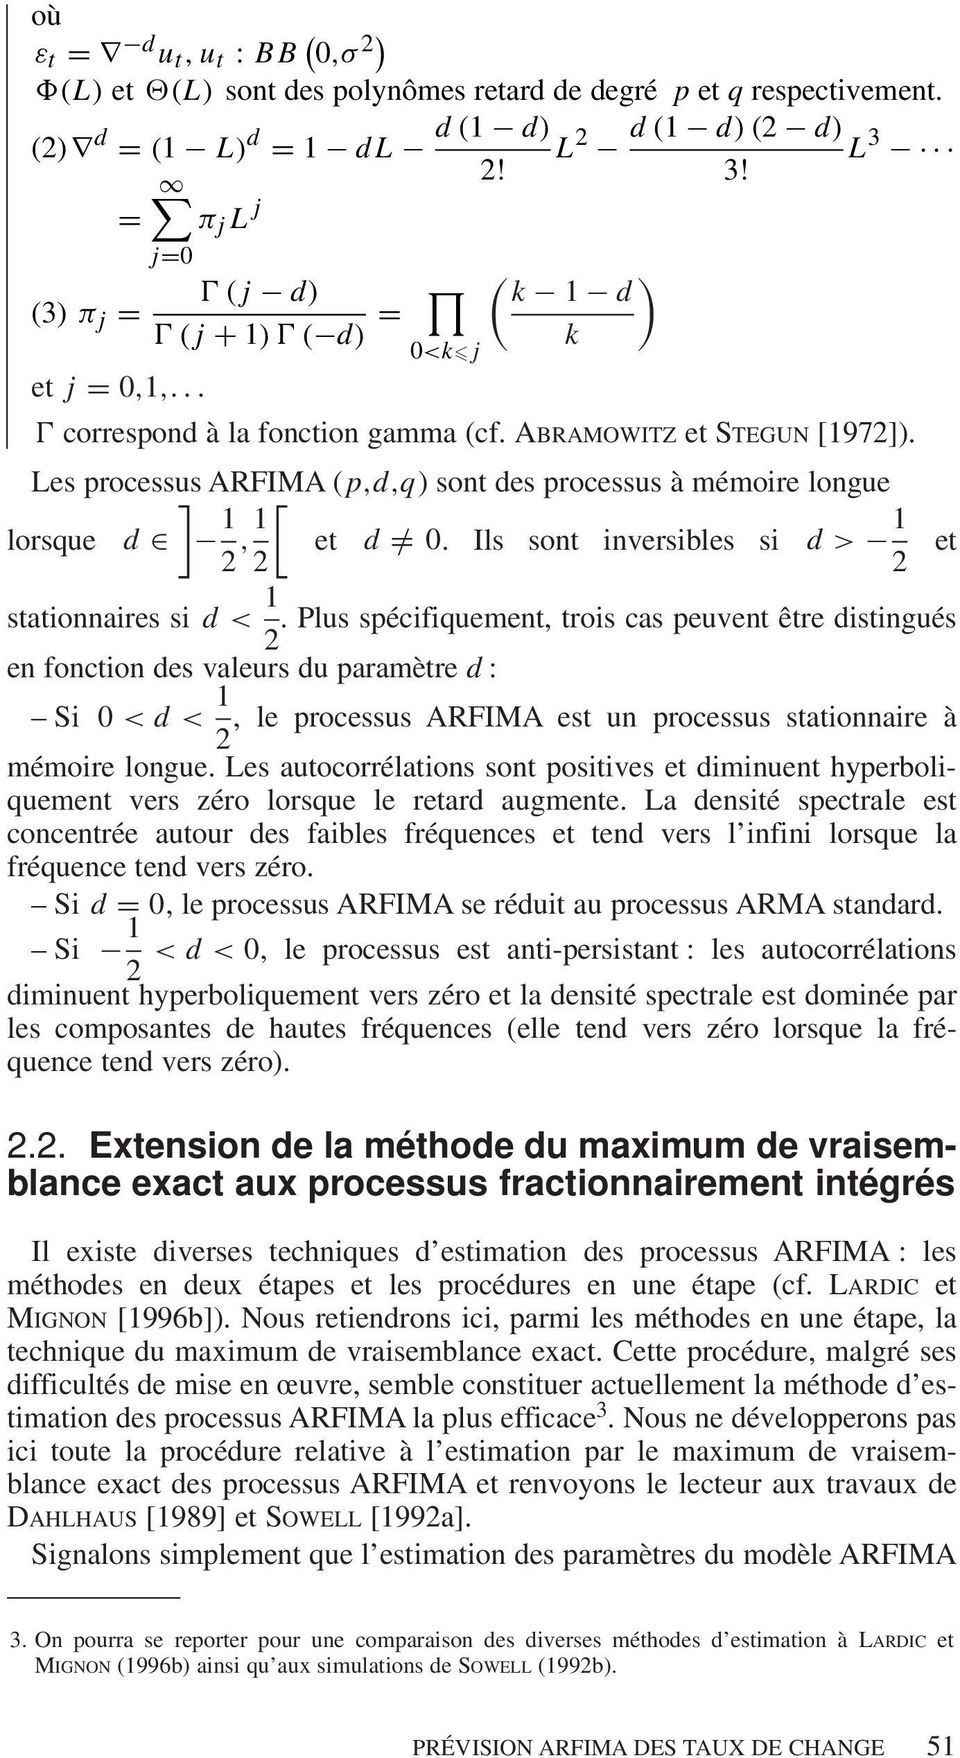 Les processus ] ARFIMA ( p,d,q) sont des processus à mémoire longue lorsque d 1 [ 2,1 et d =/ 0. Ils sont inversibles si d > 1 2 2 et stationnaires si d < 1.